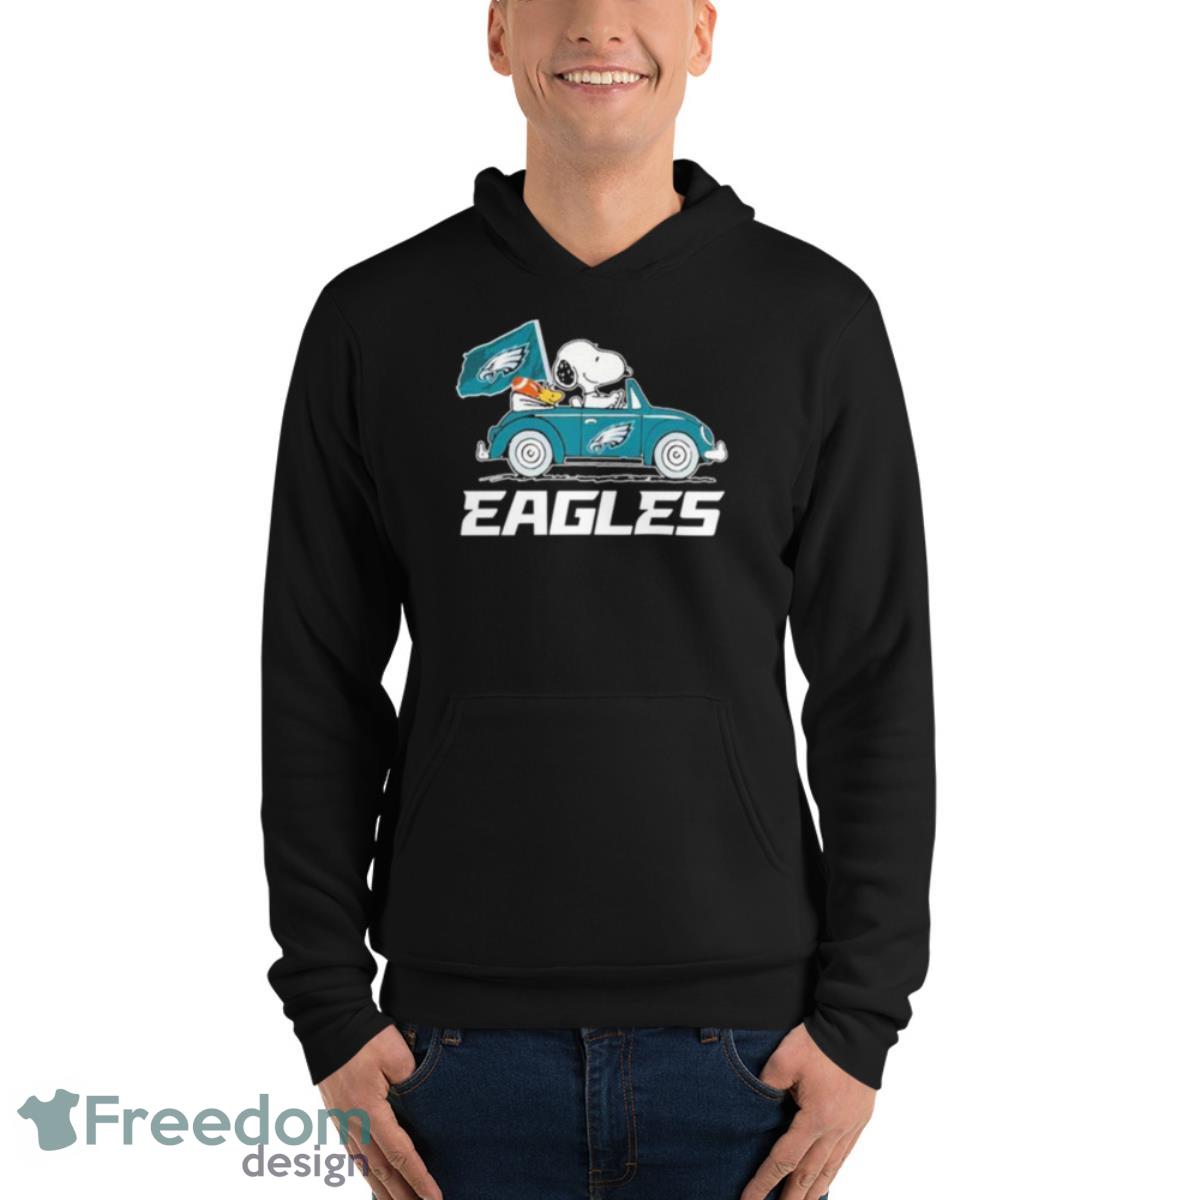 Super Bowl LVII 2023 Philadelphia Eagles Vintage Shirt - Peanutstee